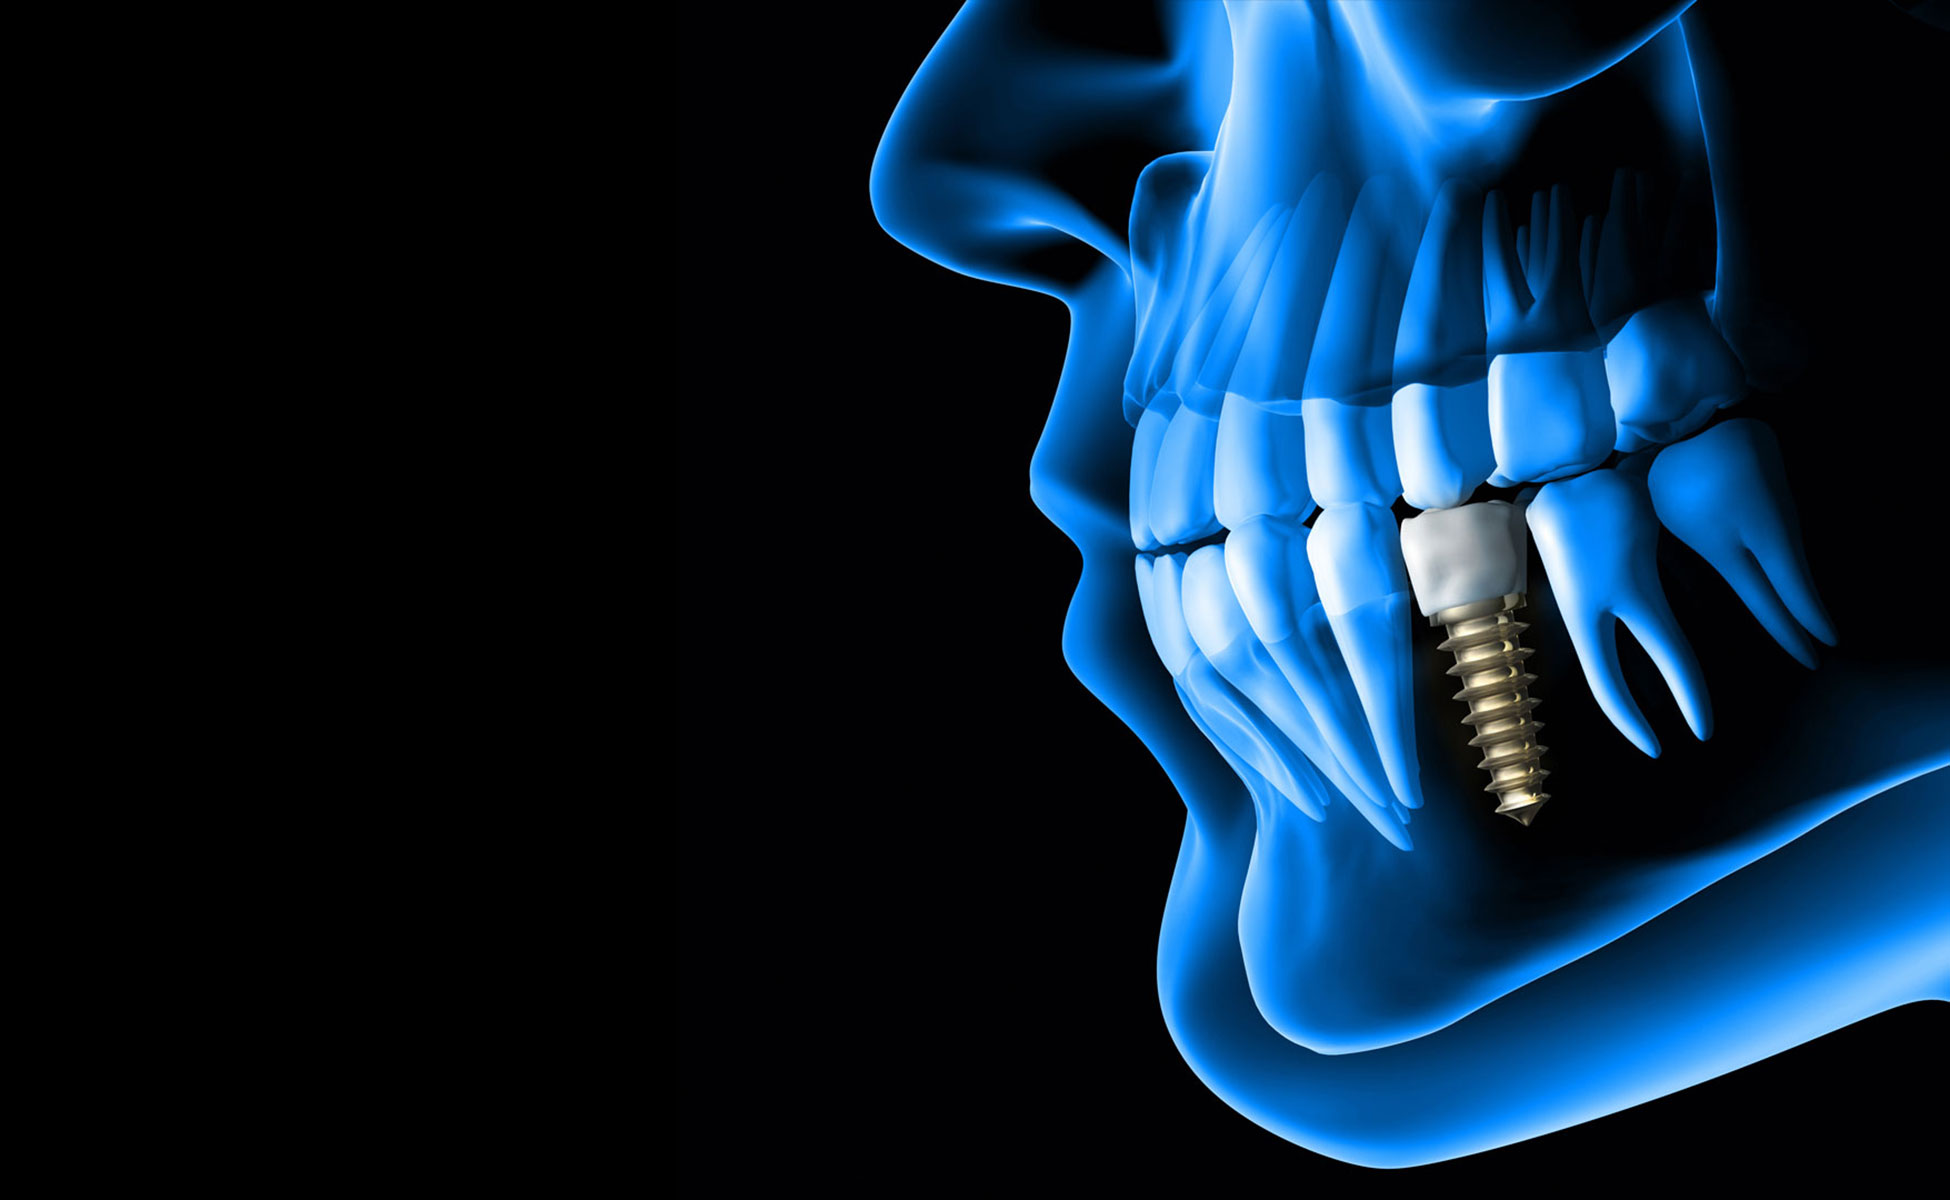 Plavi 3D prikaz lijevog profila gornje i donje čeljusti s implantatom u donoj čeljusti